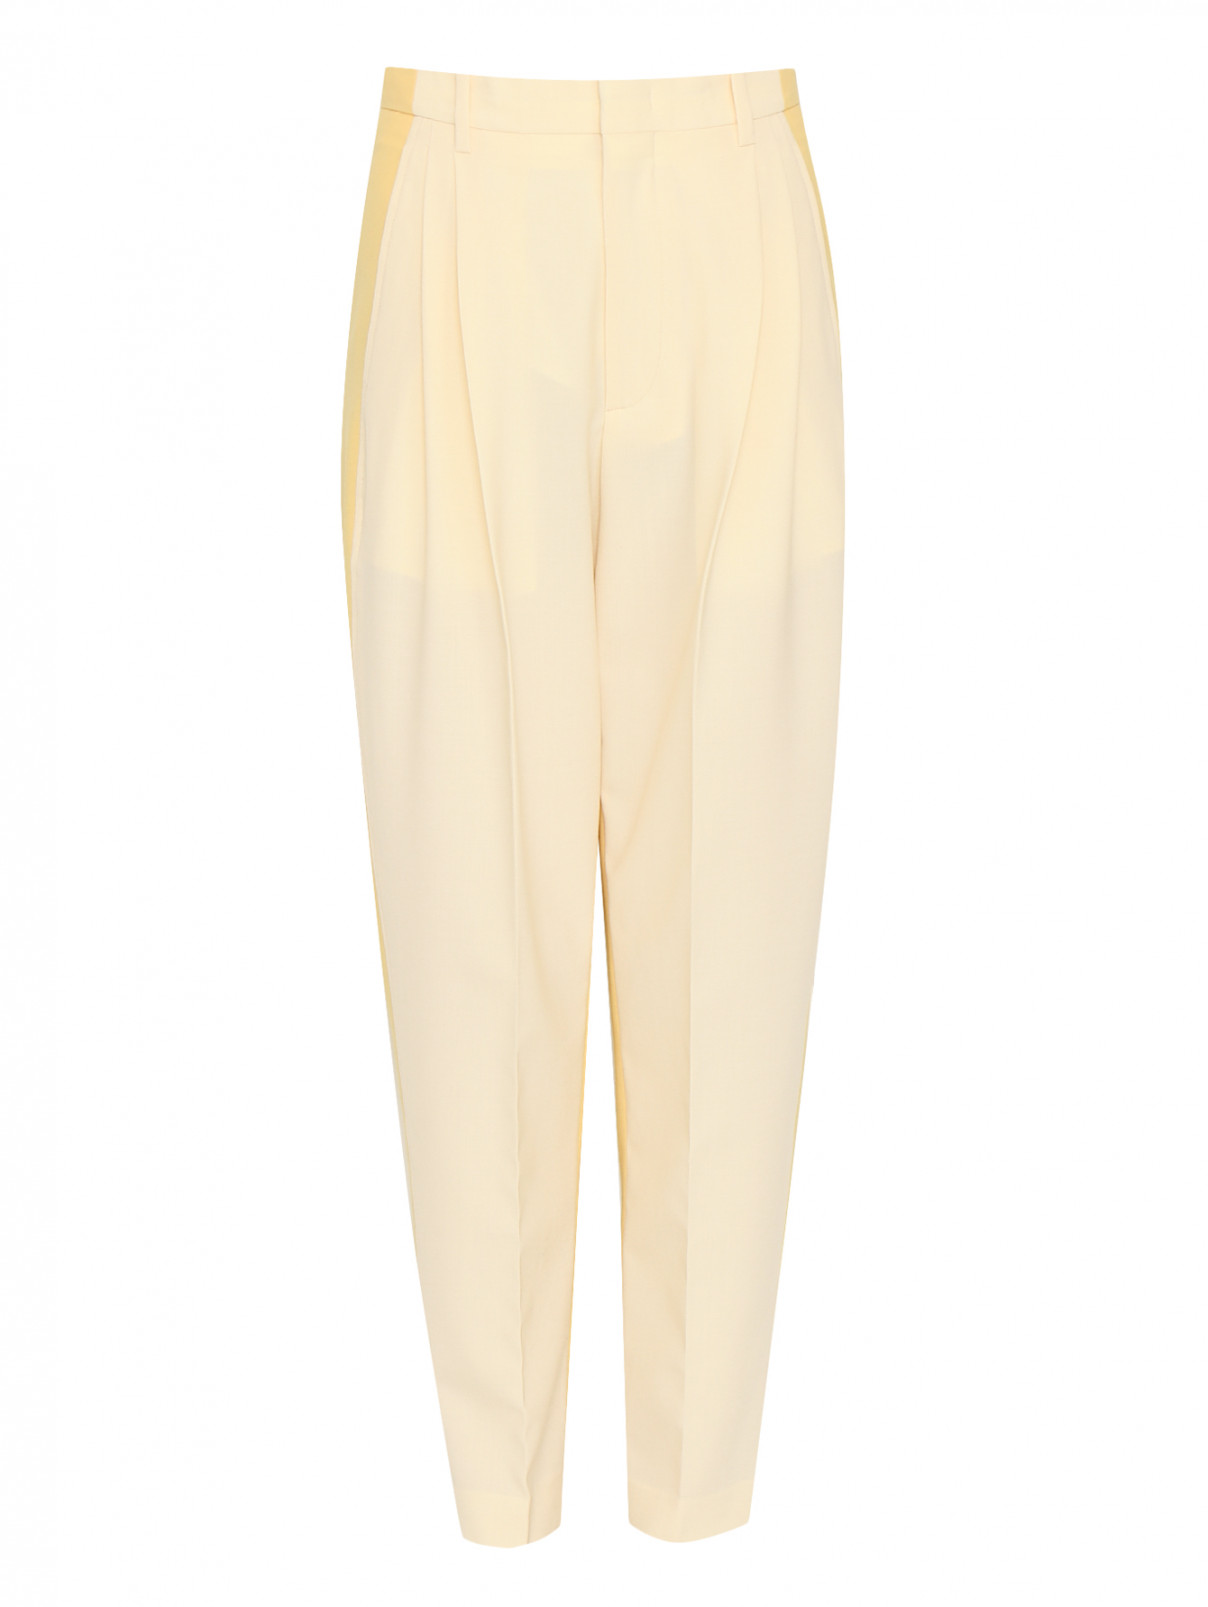 Укороченные брюки из смешанной шерсти с карманами Erika Cavallini  –  Общий вид  – Цвет:  Желтый